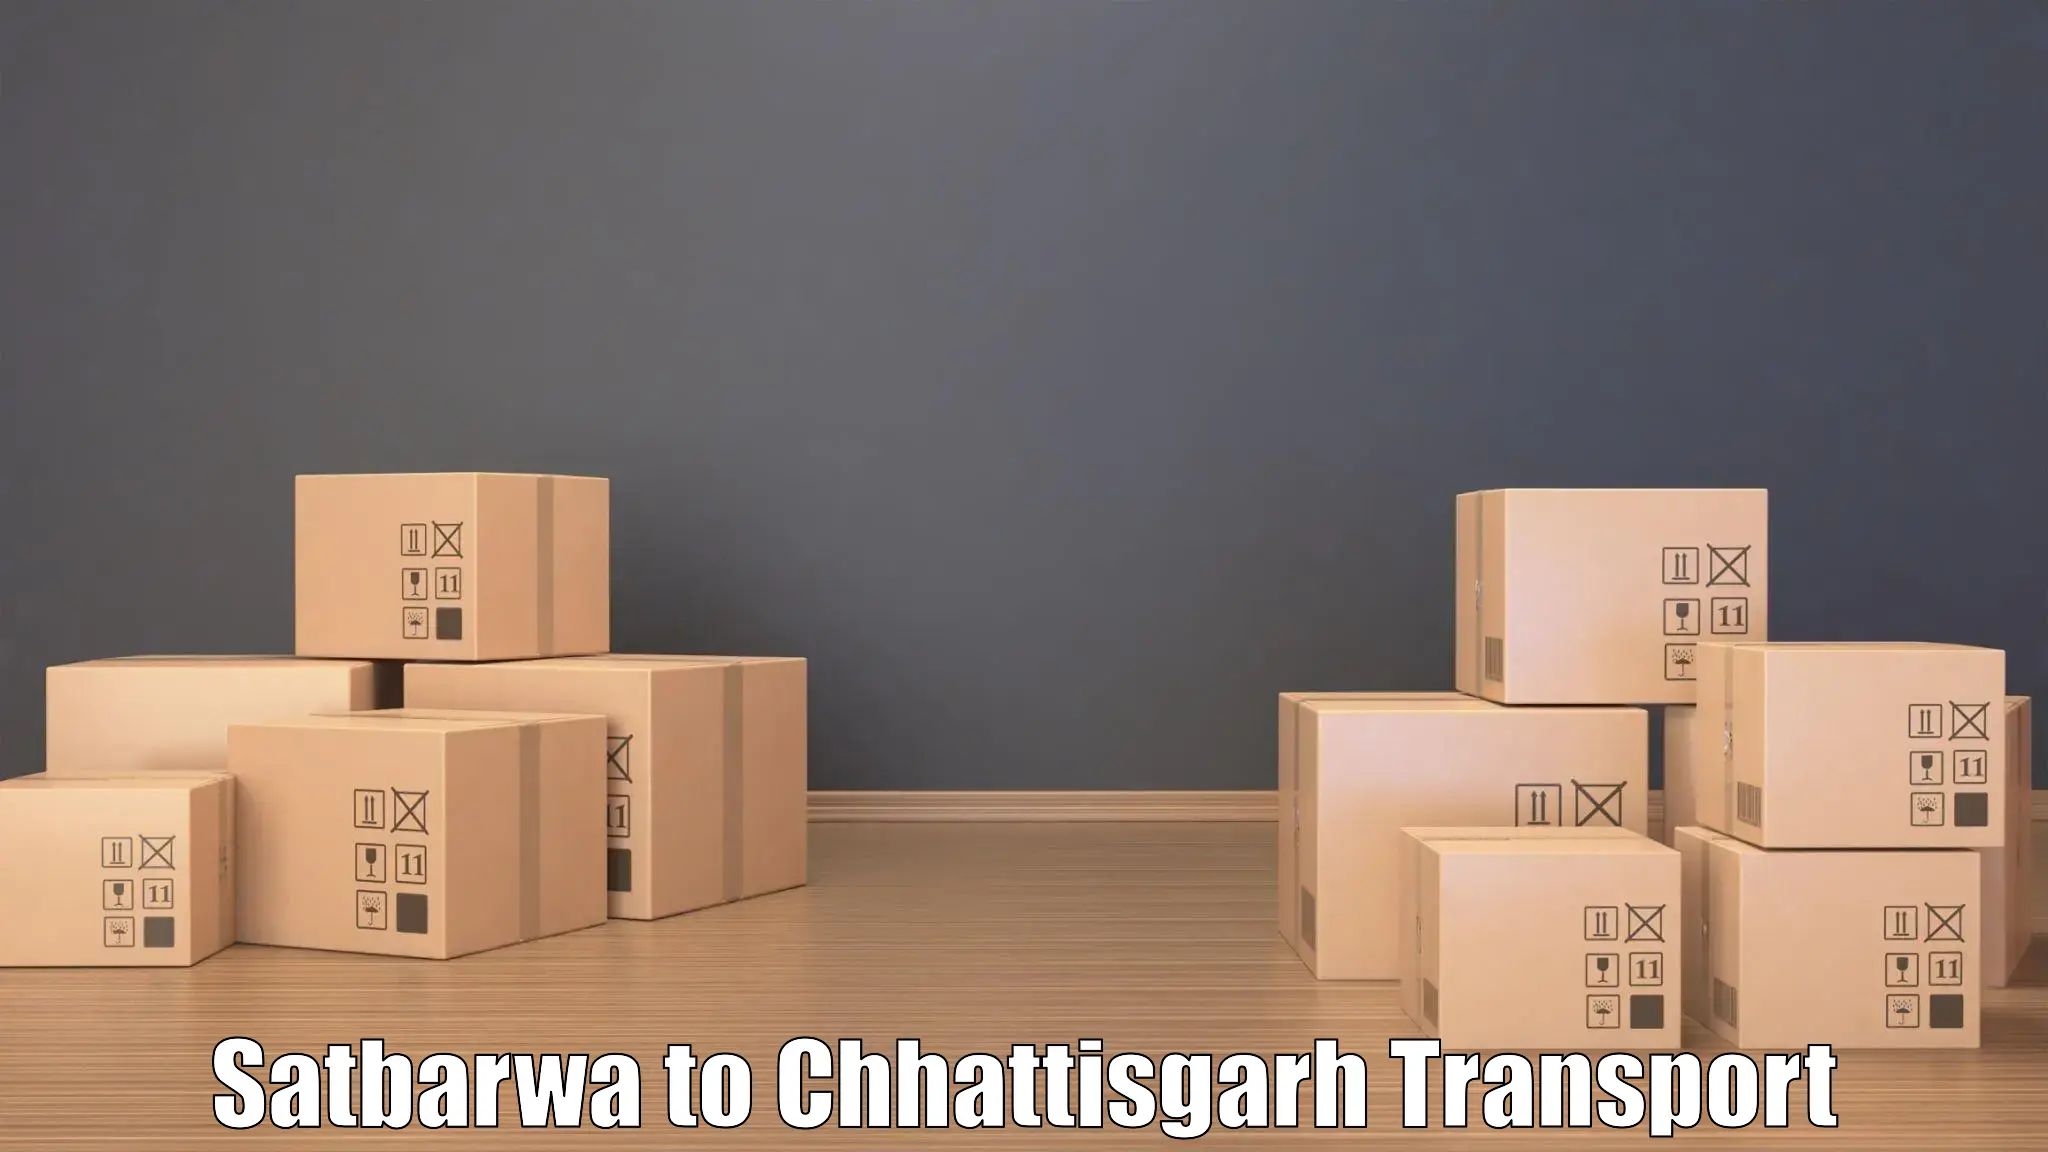 Shipping services in Satbarwa to Jaijaipur